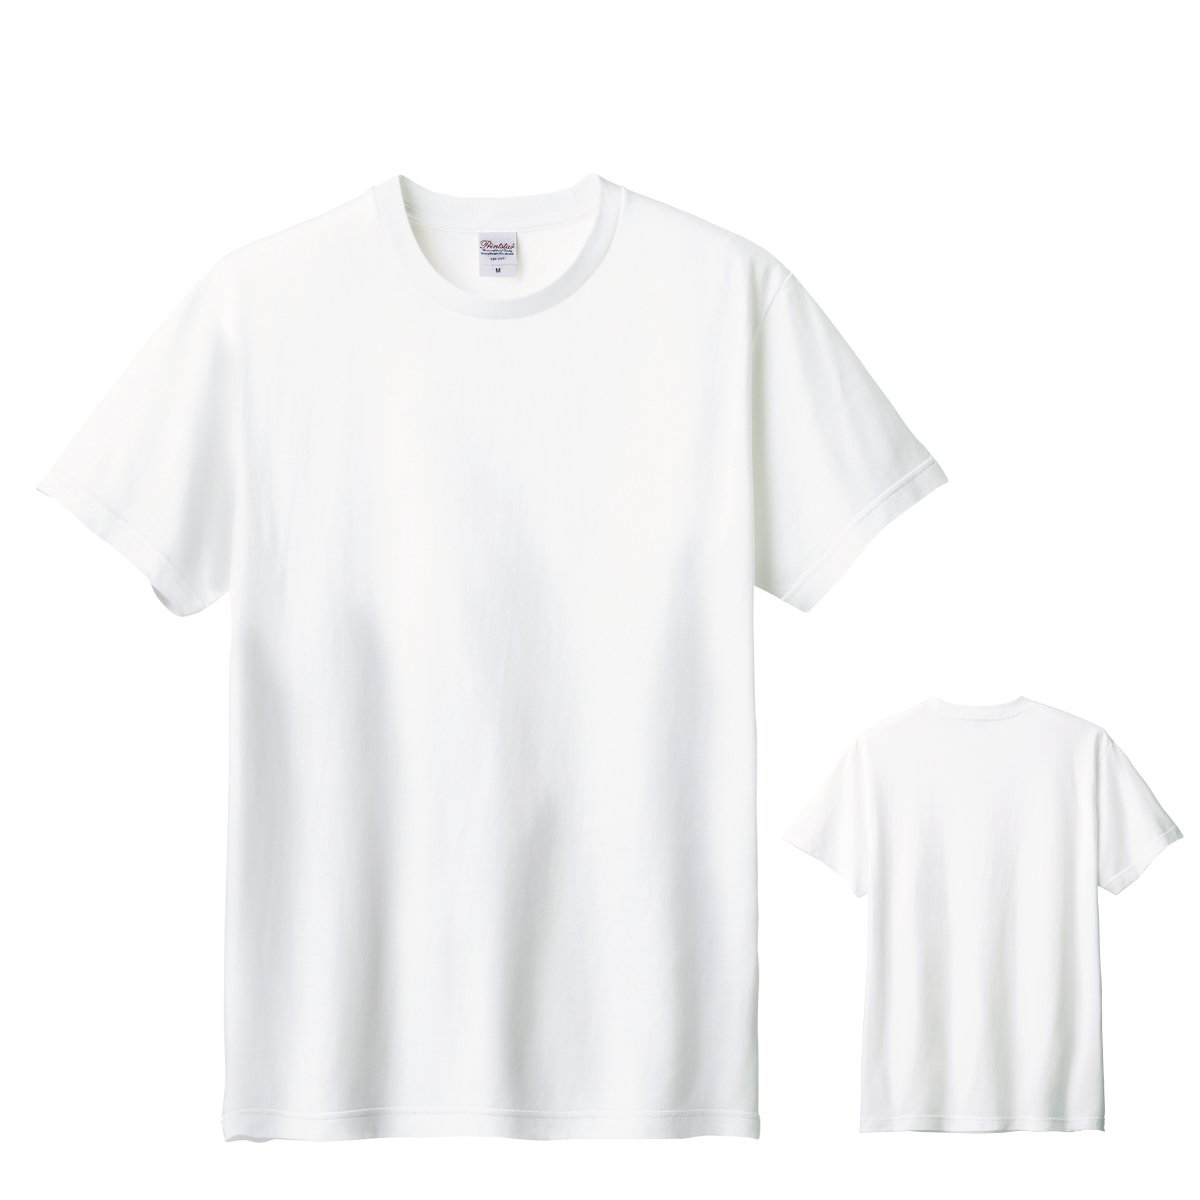 夏綿の純白Tシャツ